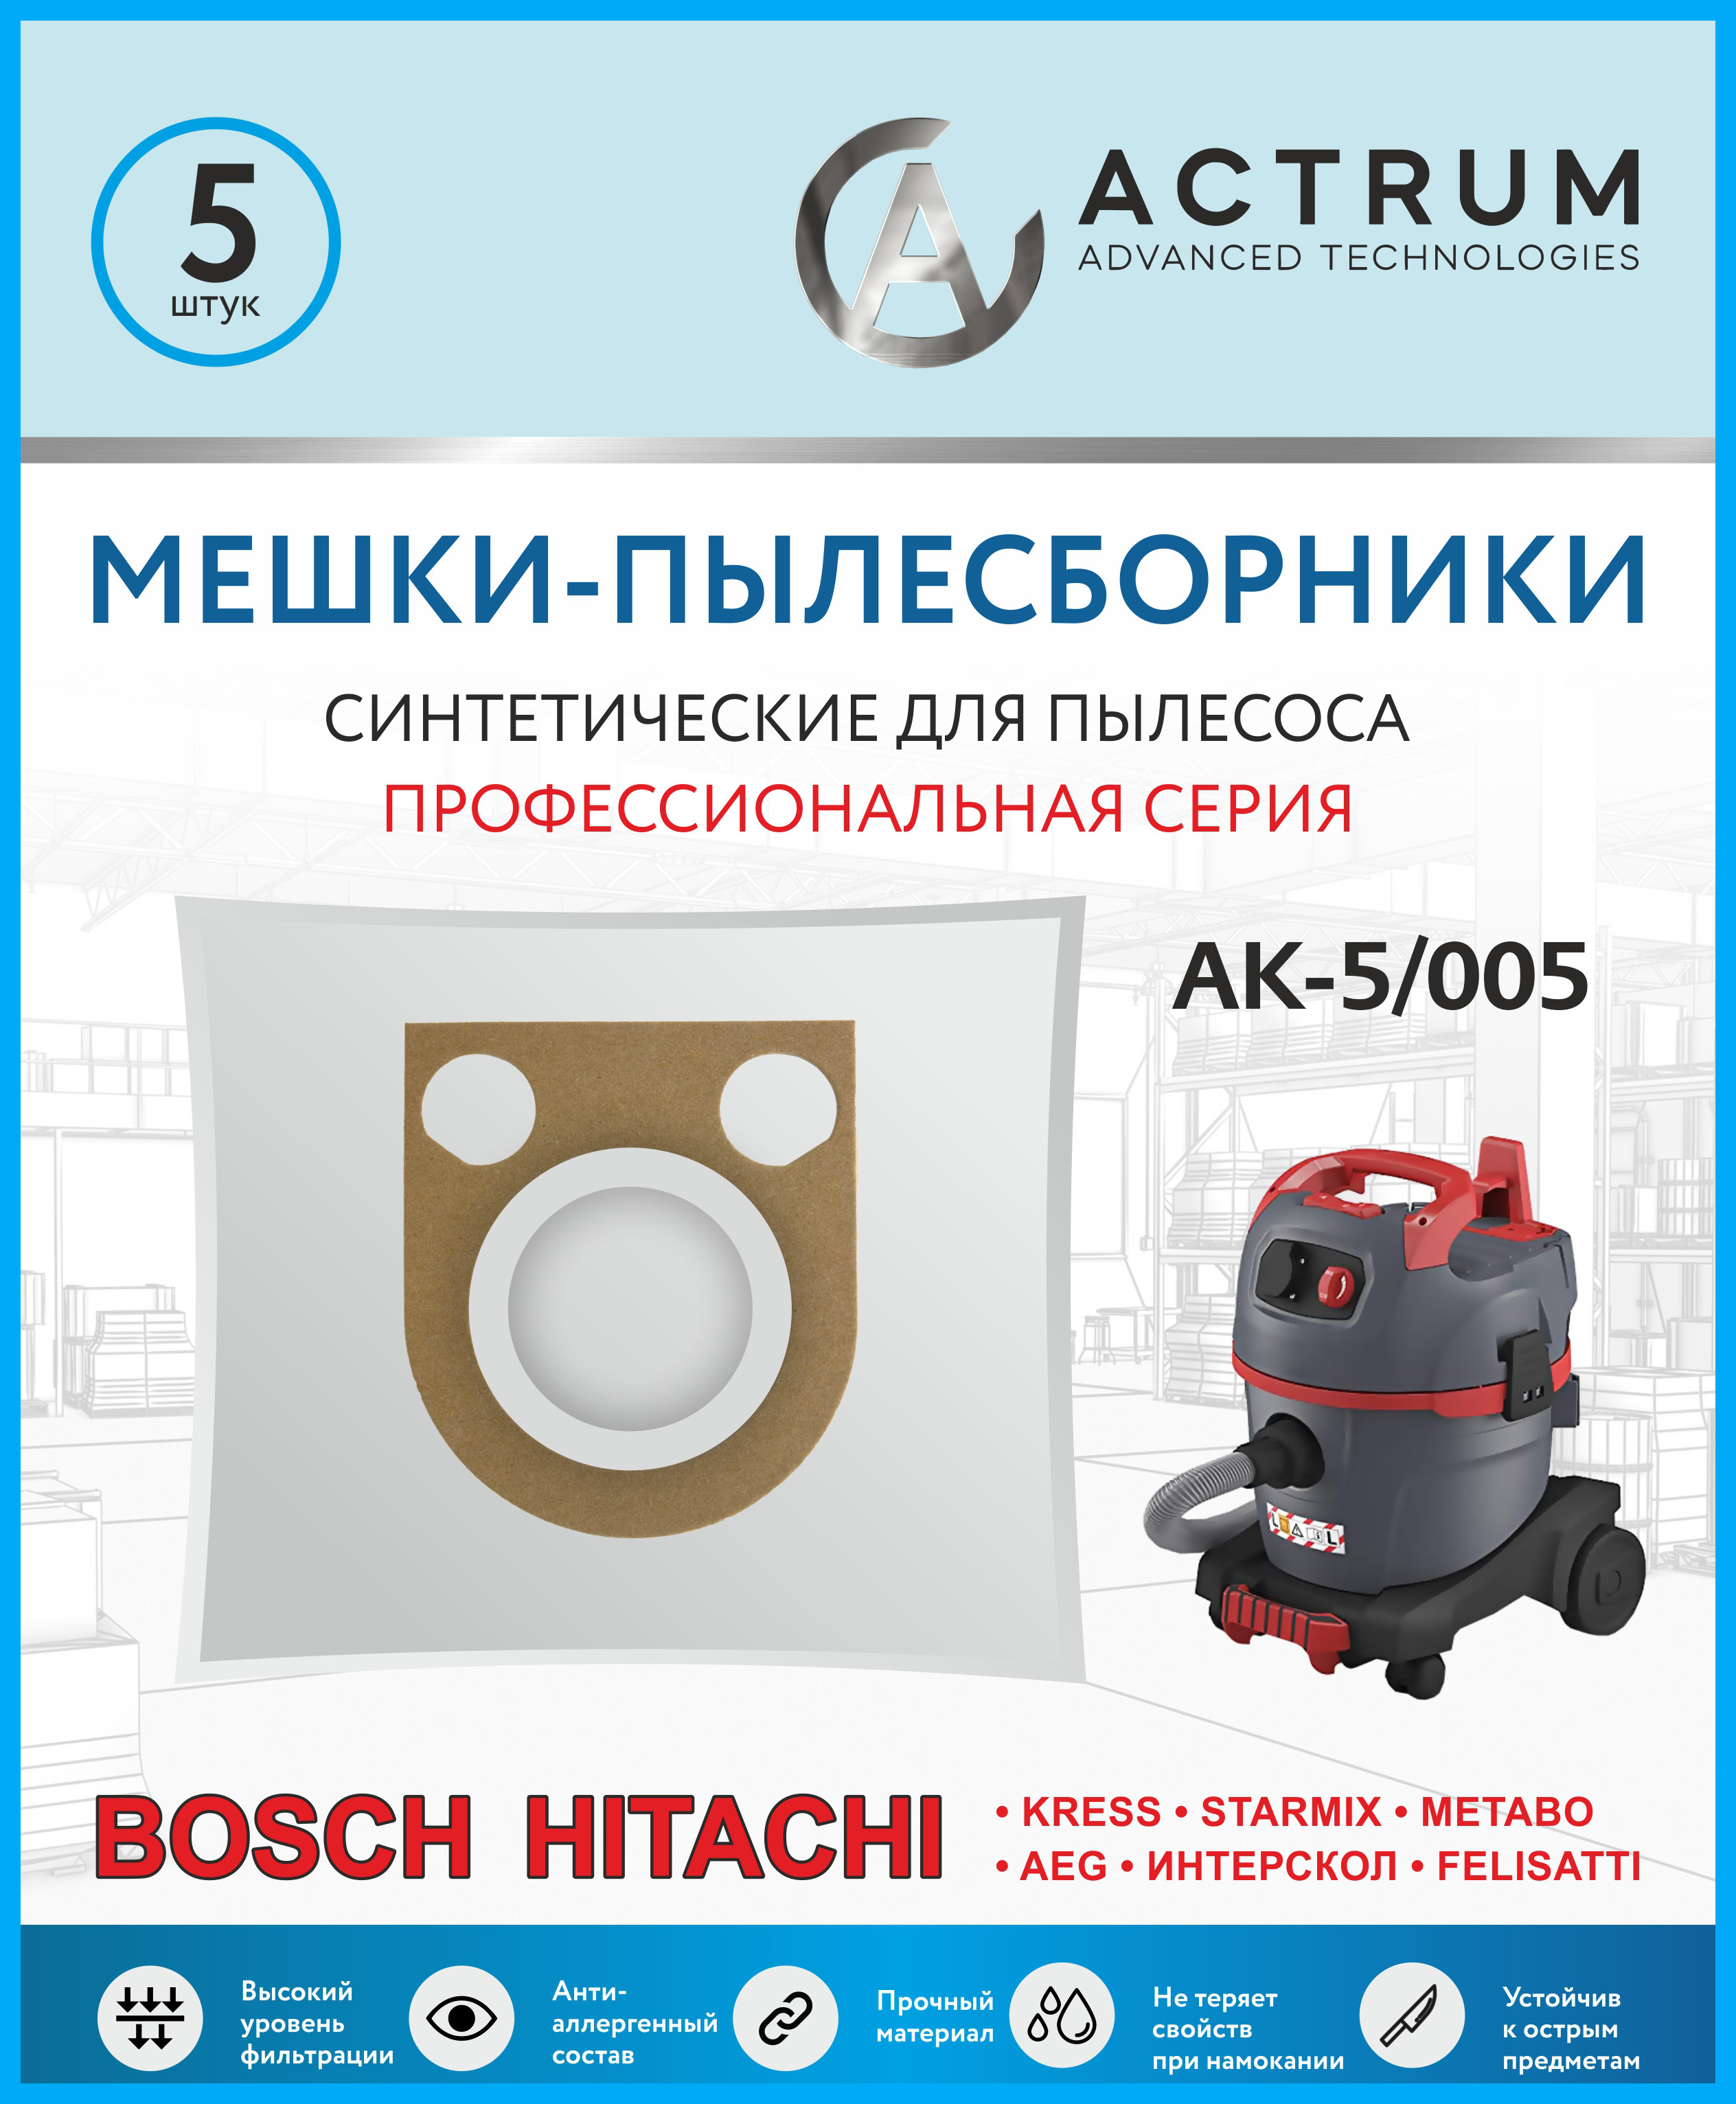 пылесборники actrum ак032 Пылесборники Actrum AK-5/005 для BOSCH GAS 25 Professional, METABO, HITACHI, STARMIX